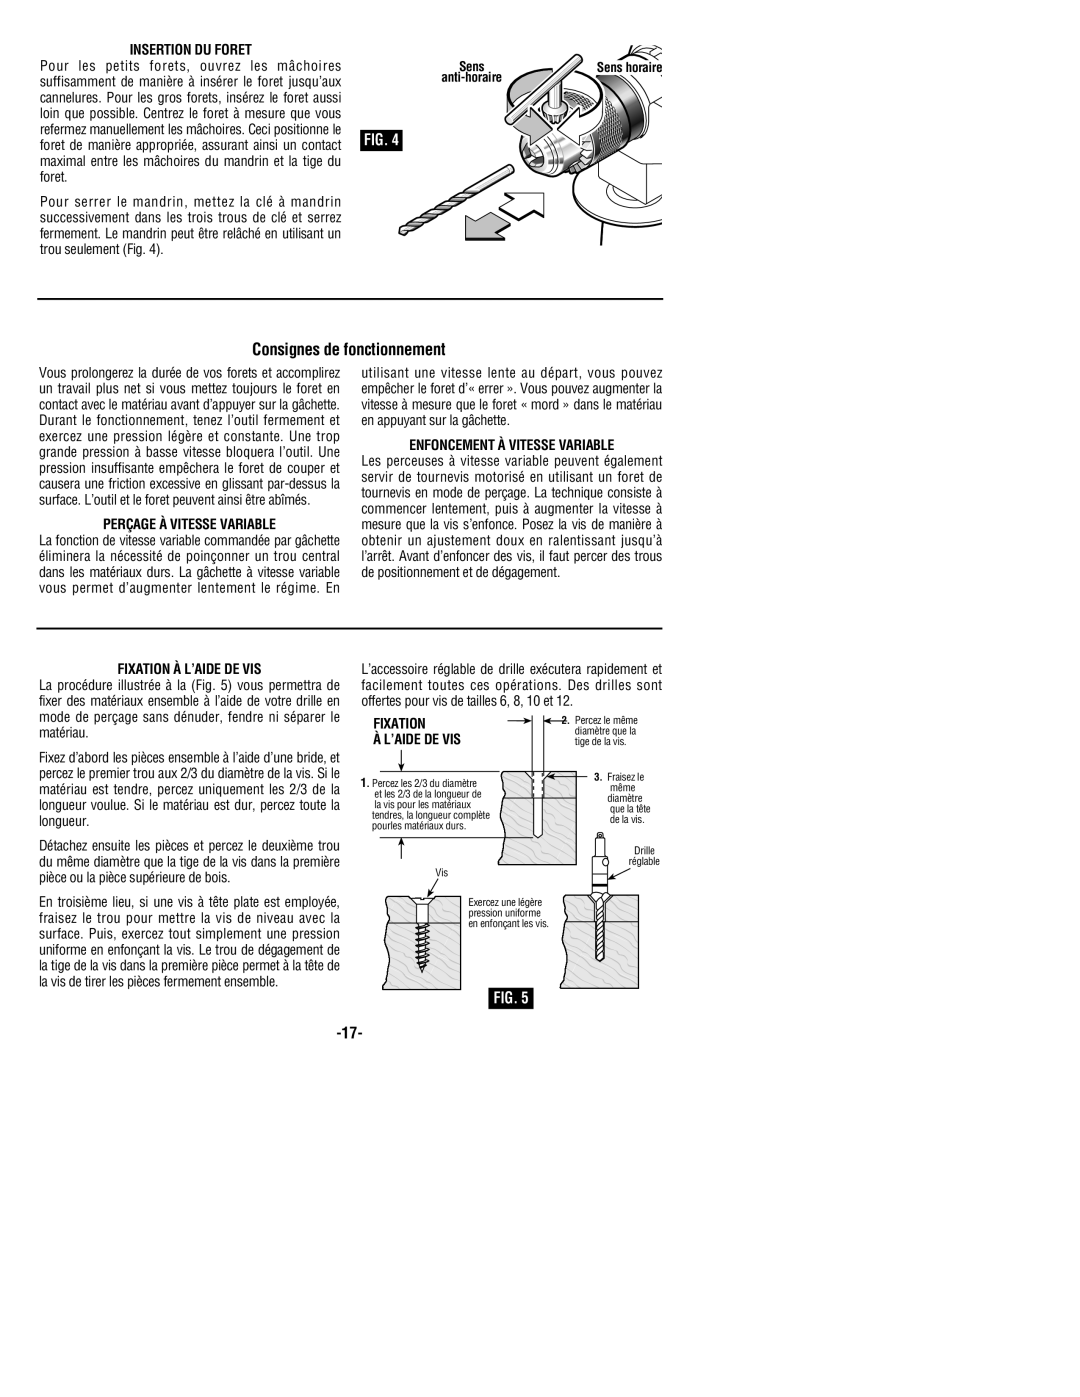 Bosch Power Tools 1199VSR manual Consignes de fonctionnement, Insertion Du Foret, Perçage À Vitesse Variable, Fixation 